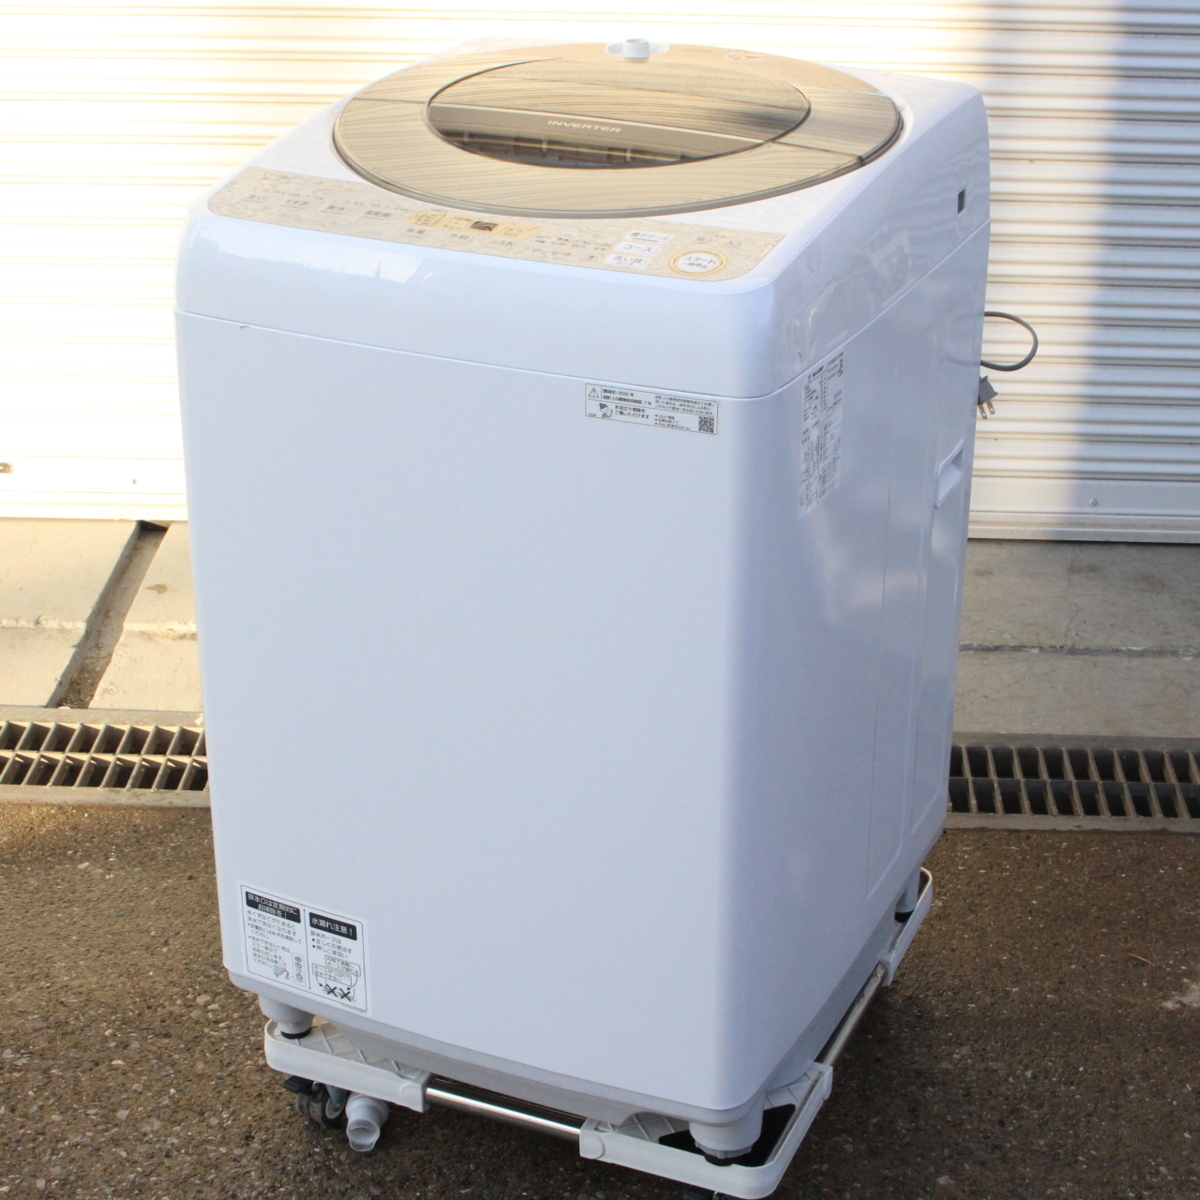 東京都渋谷区にて シャープ 全自動洗濯機 ES-GV9D-N 2020年製 を出張買取させて頂きました。